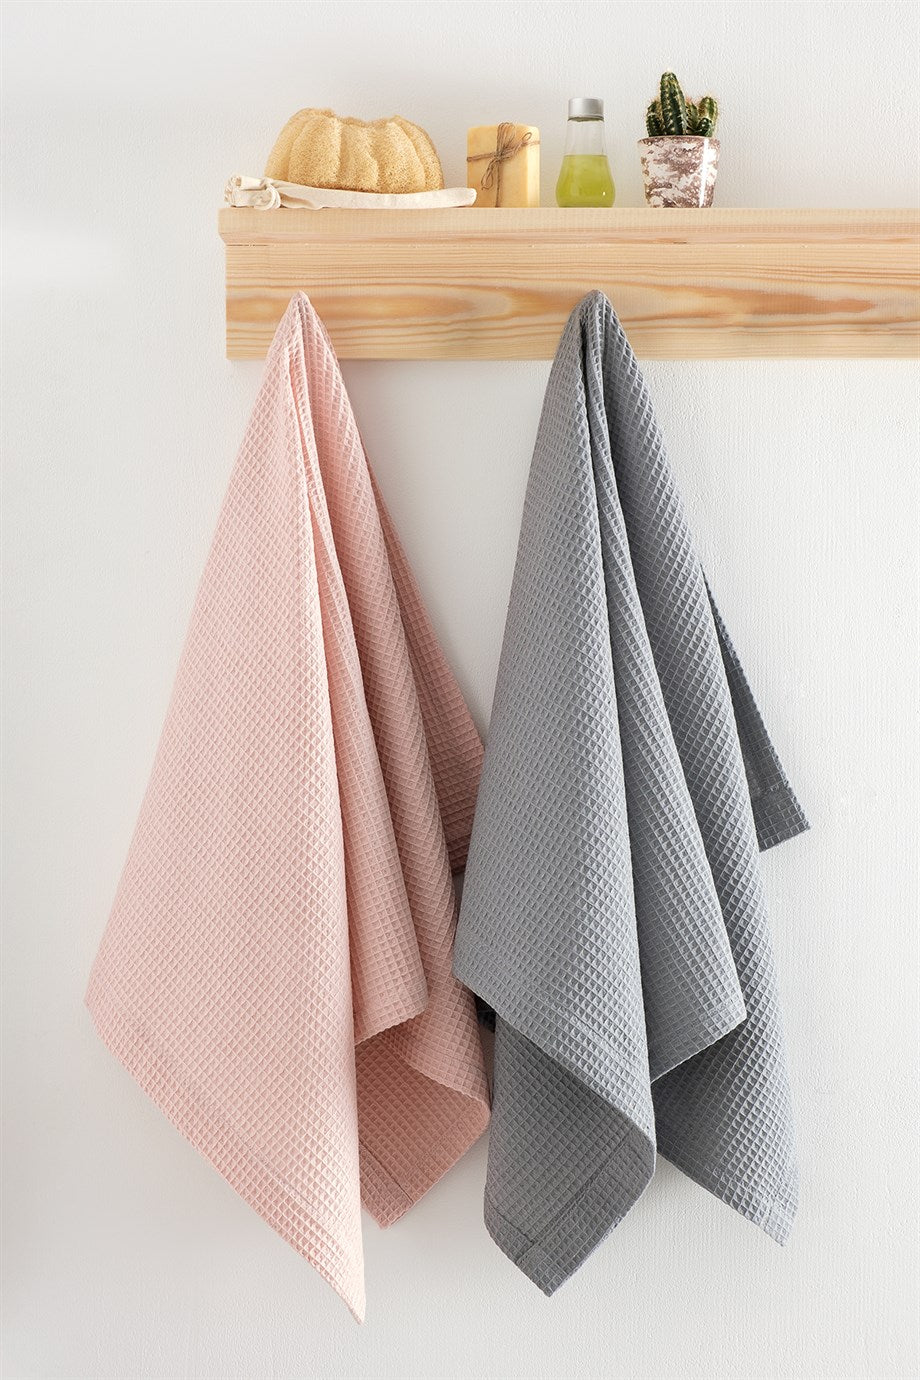 DENIZLI CONCEPT Soho Pique Towel Set Powder-Grey